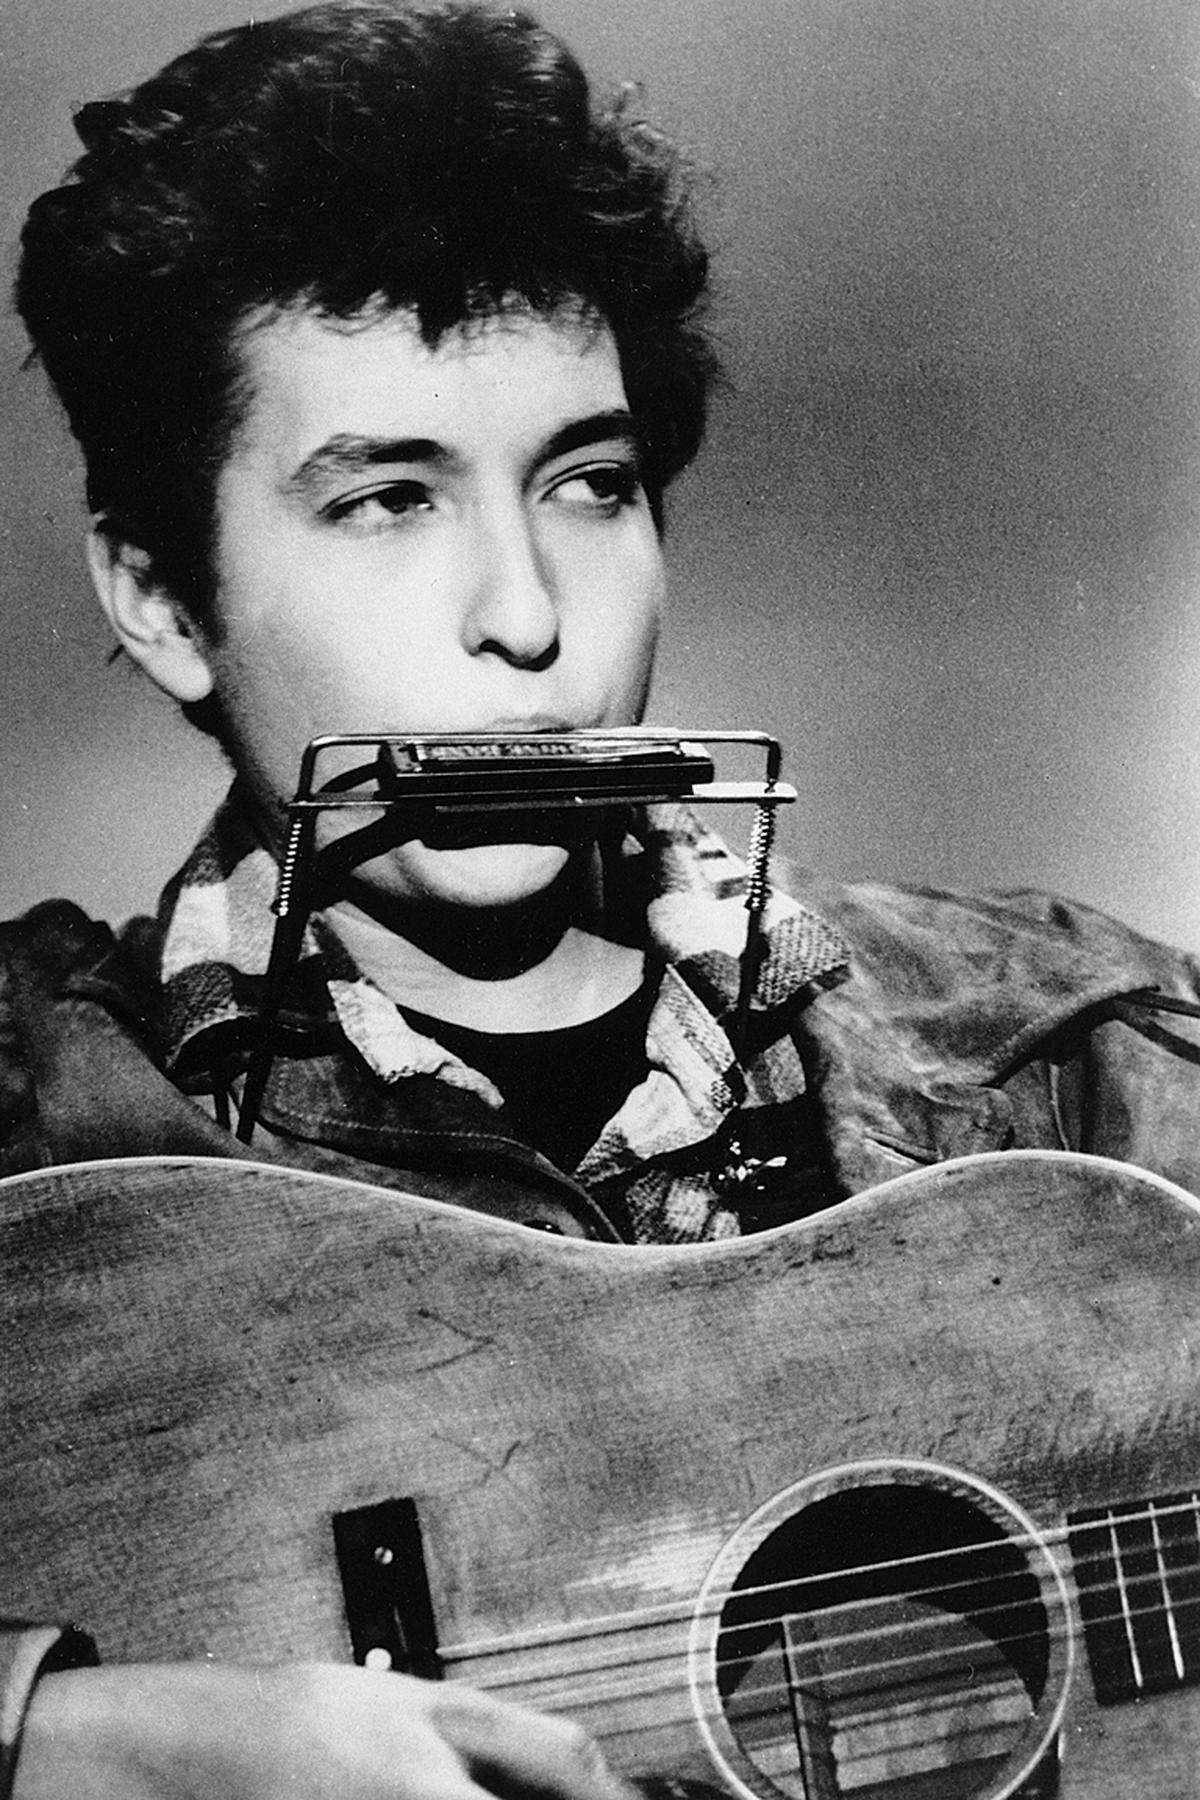 Bob Dylans erstes Album, das er schlicht "Bob Dylan" nannte, erschien 1962. 1963 wurde "Blowin' in the Wind" veröffentlicht. Der Song galt als eine der Hymnen der Folk-Rock-Bewegung und wurde unzählige Male gecovert, unter anderem von Marlene Dietrich. Im Film "Forrest Gump" wird er von Joan Baez gesungen.